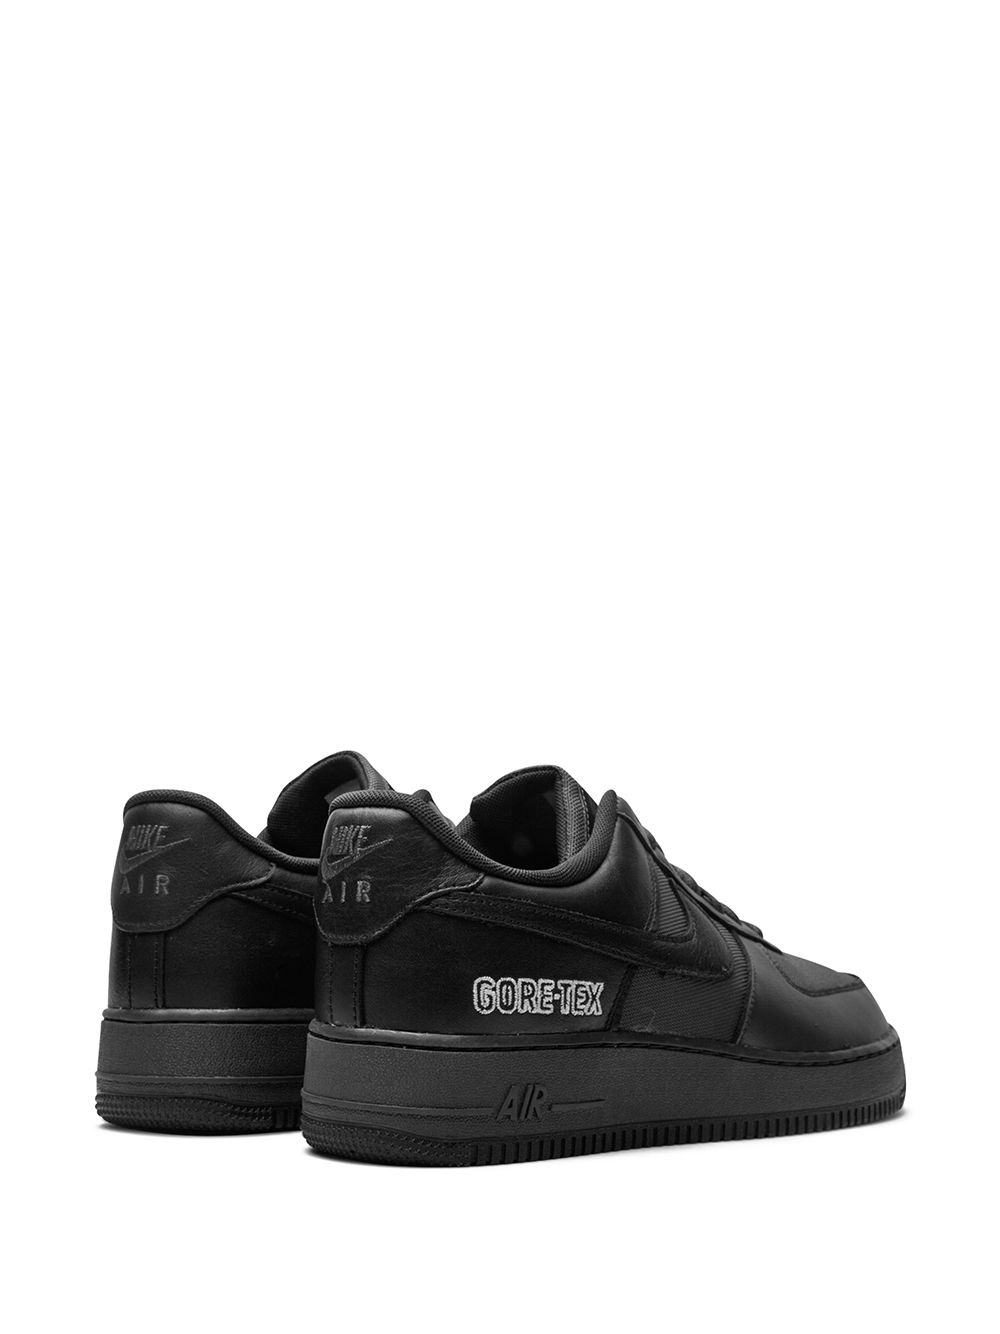 Air Force 1 Low Gore-Tex "Black" sneakers - 3